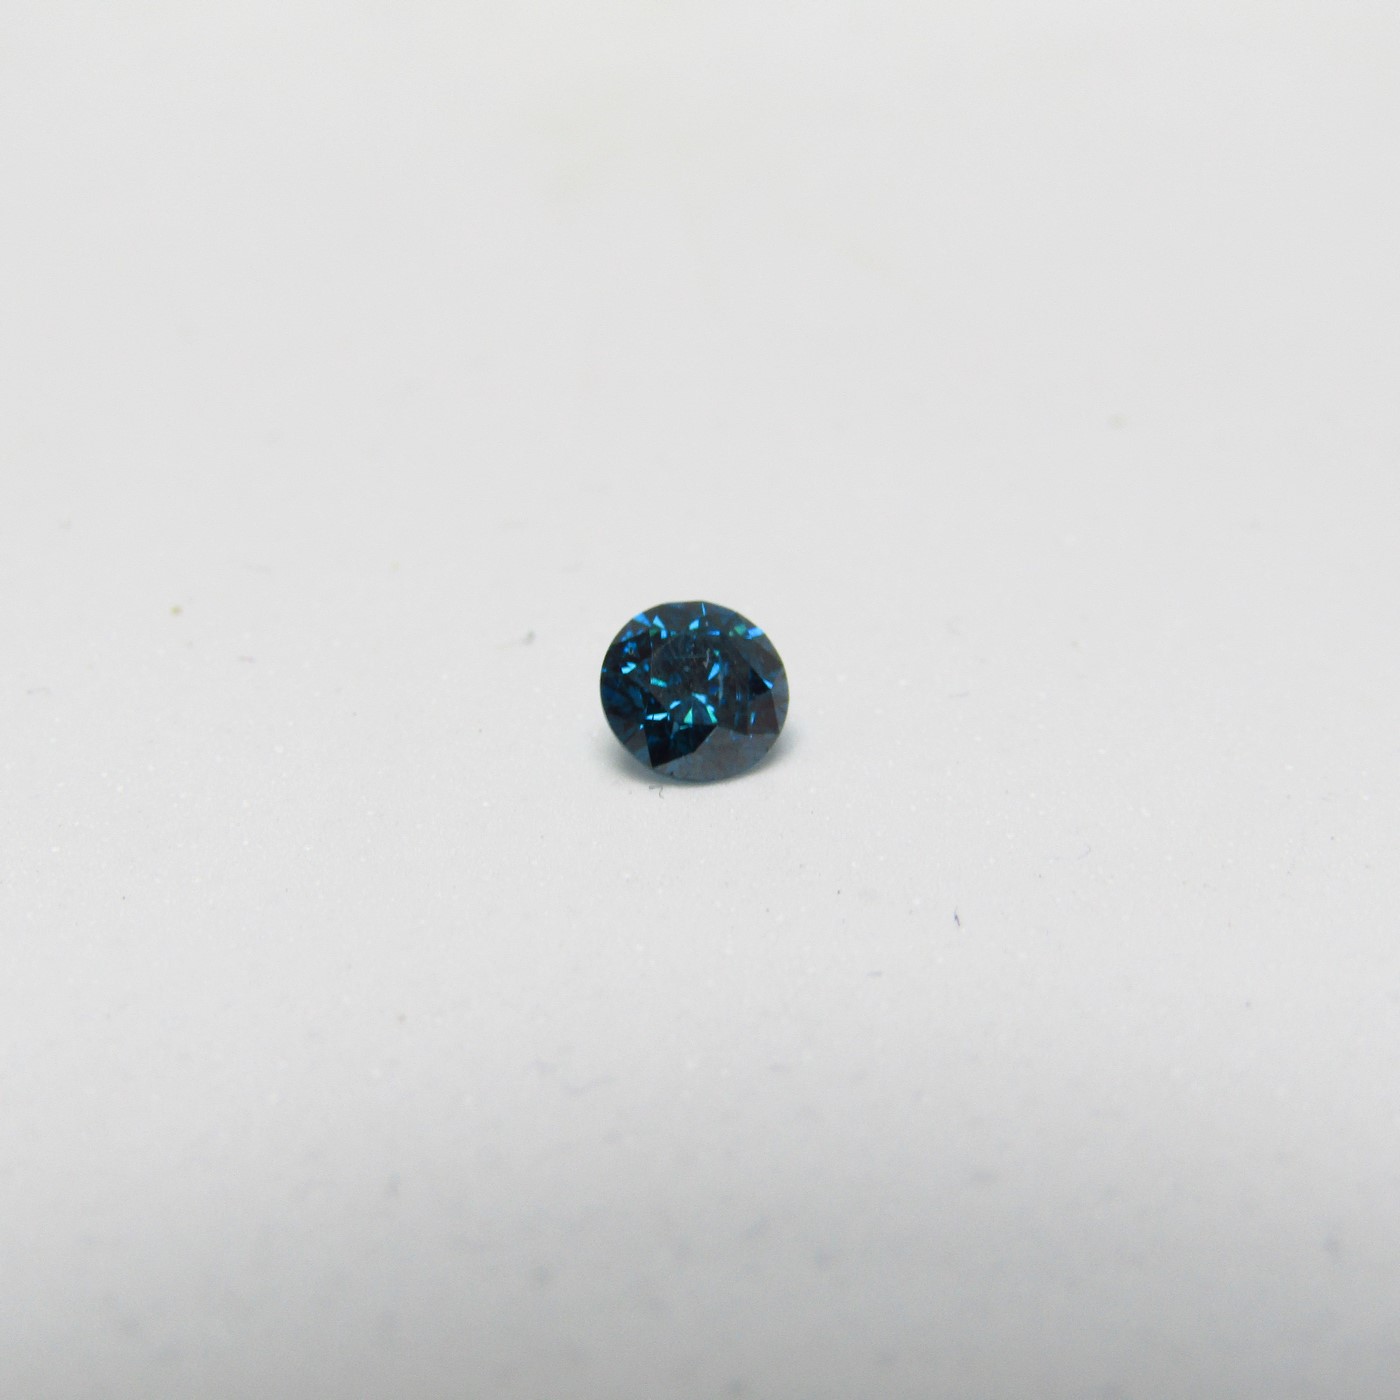 Diamante Natural de 0,46 ct. Talla: Brillante. Color: Blue. Pureza: P3. Mejorado. Certificado IGR.